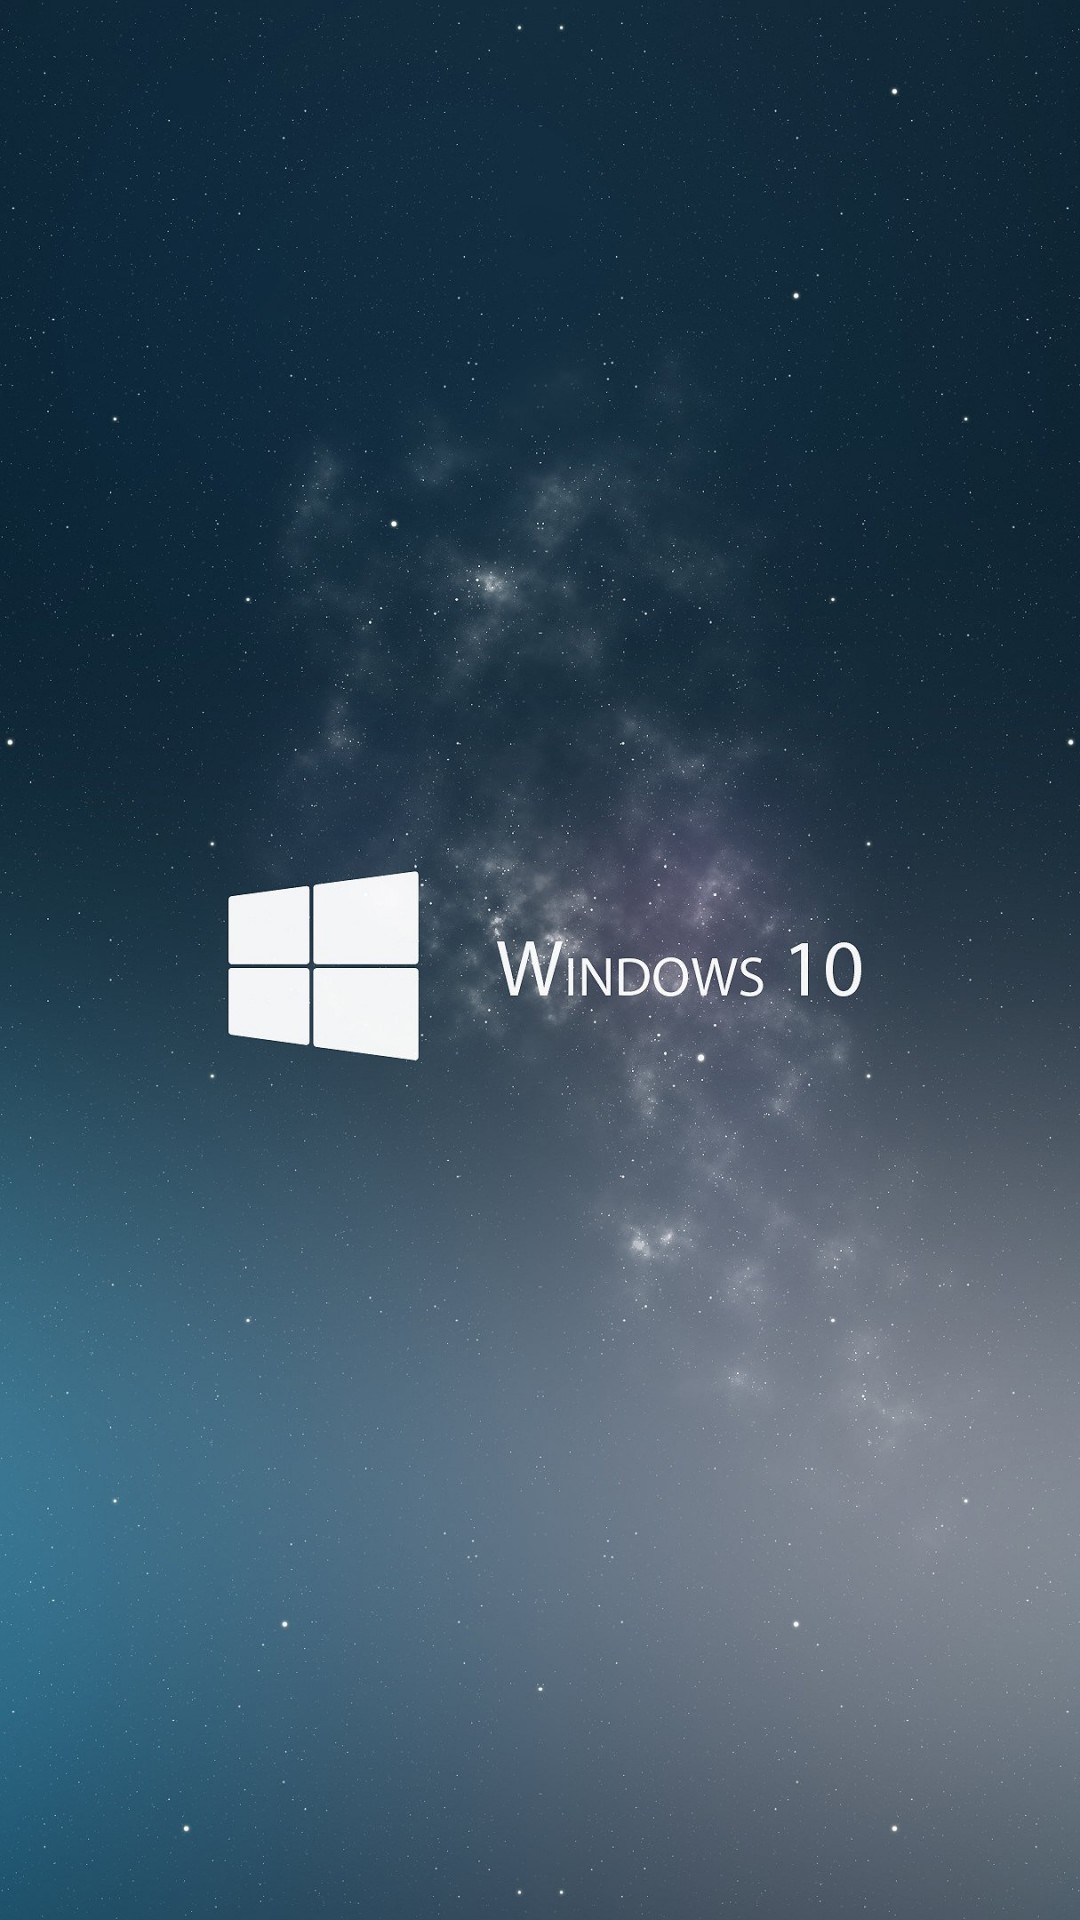 Windows 10 Wallpaper for LG G2